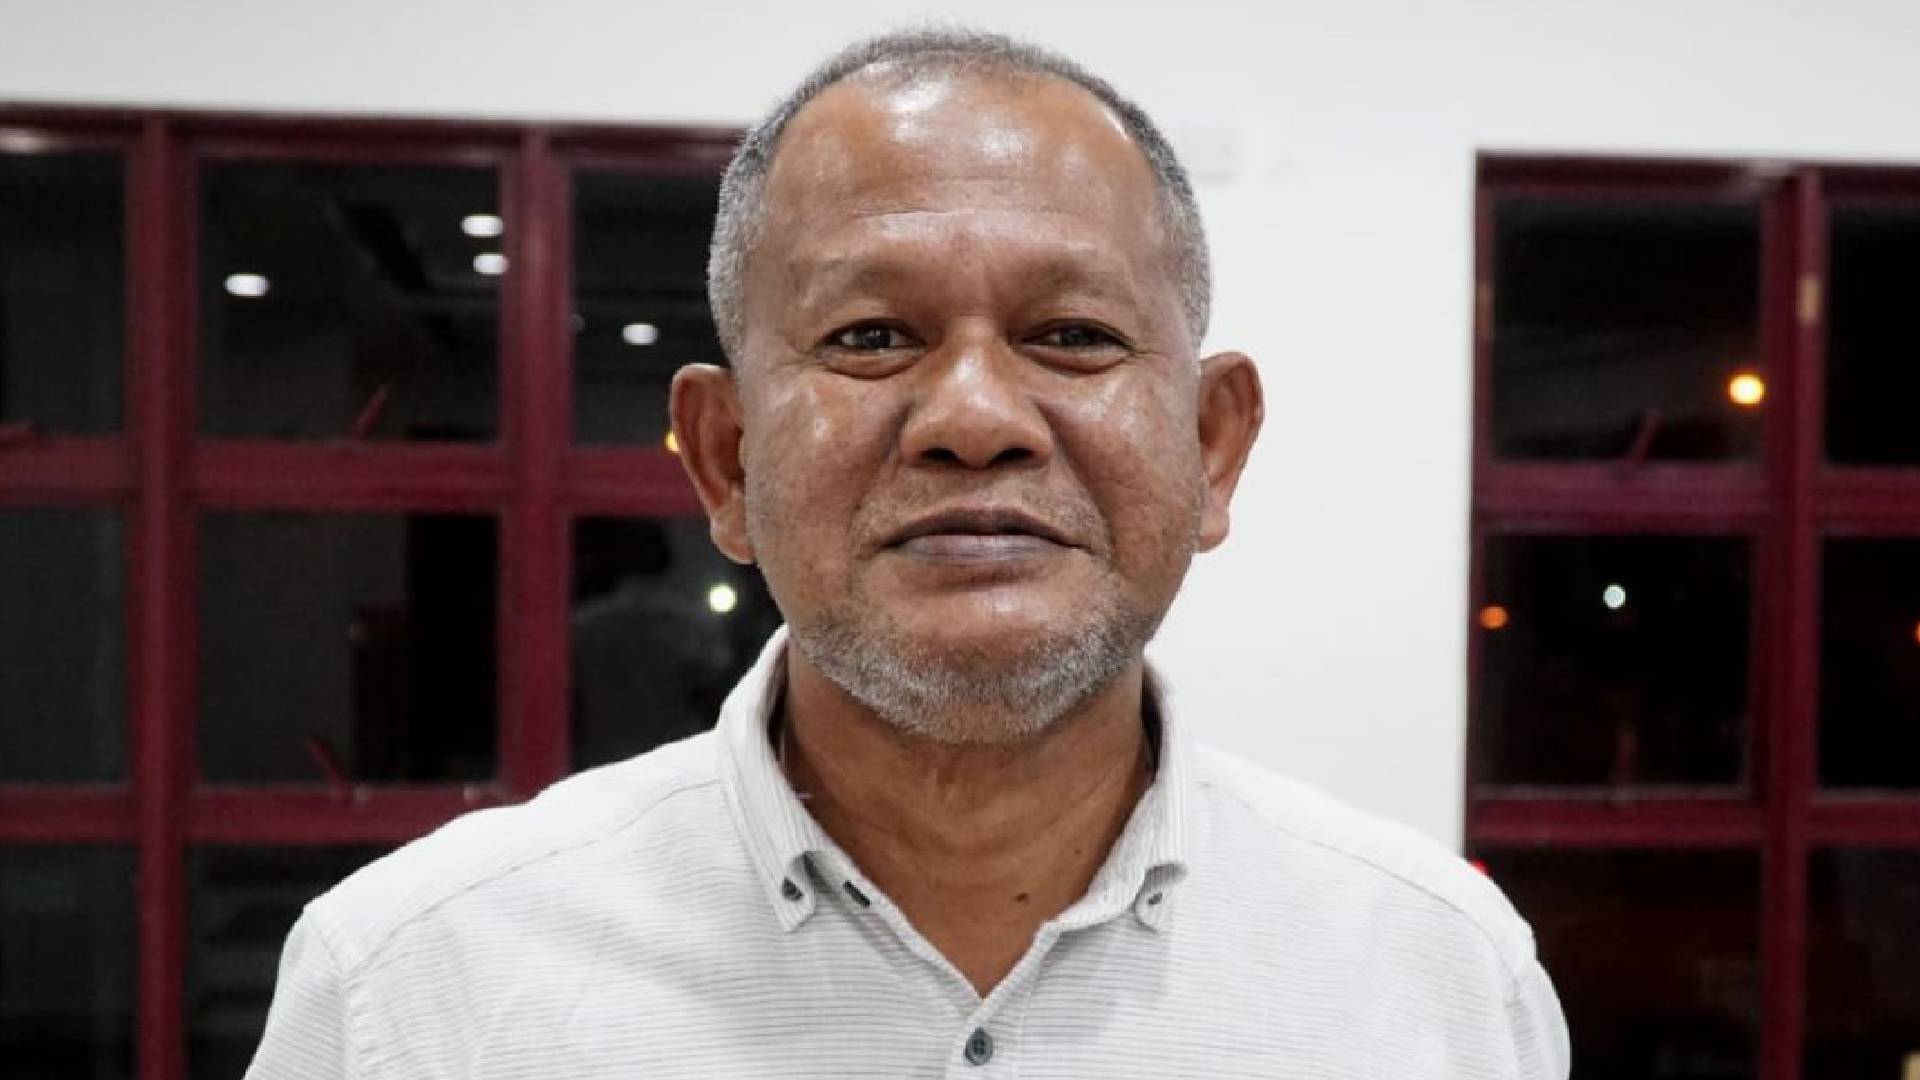 azman noh cikgu man perak fc Azman Noh Berasa Bingung, Tiba-Tiba Dilantik Sebagai Ahli Lembaga Pengarah Perak FC